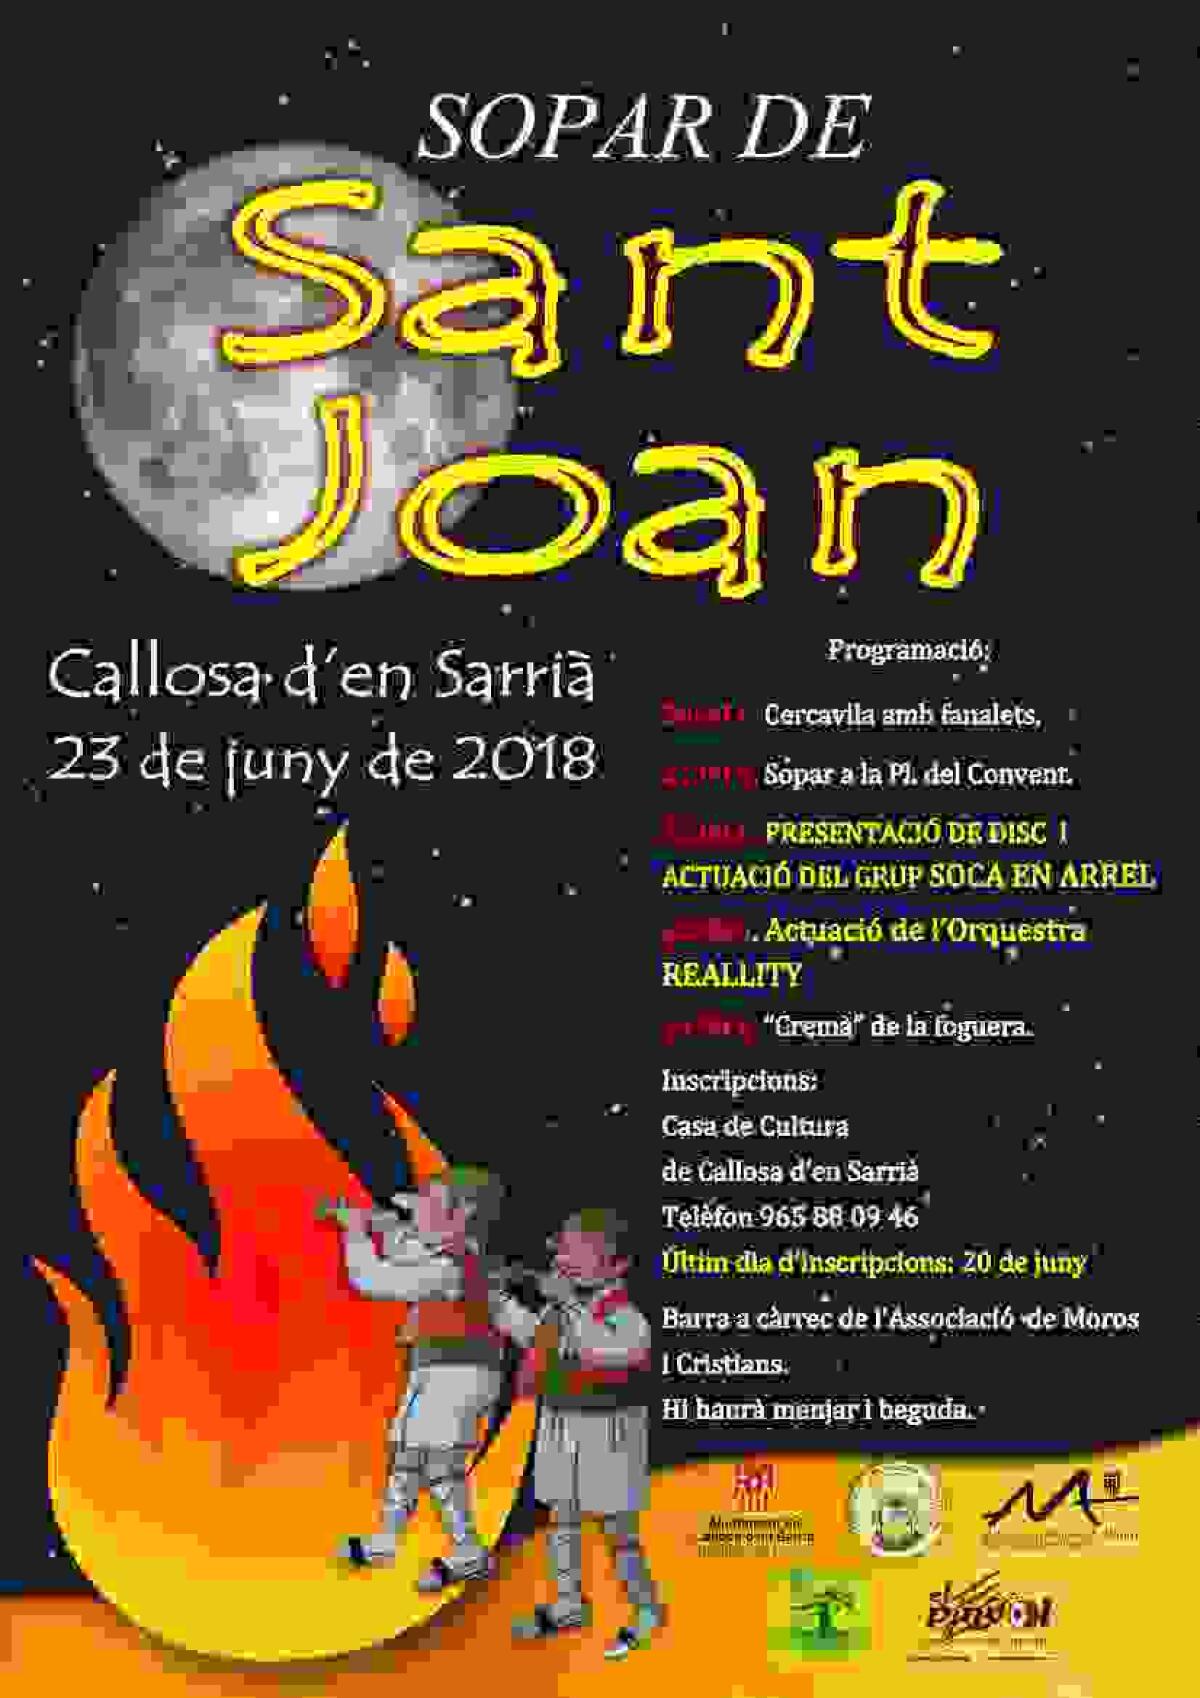  Callosa d’en Sarrià celebra mañana la noche de San Juan con una cena popular y la actuación del grupo Soca en Arrel